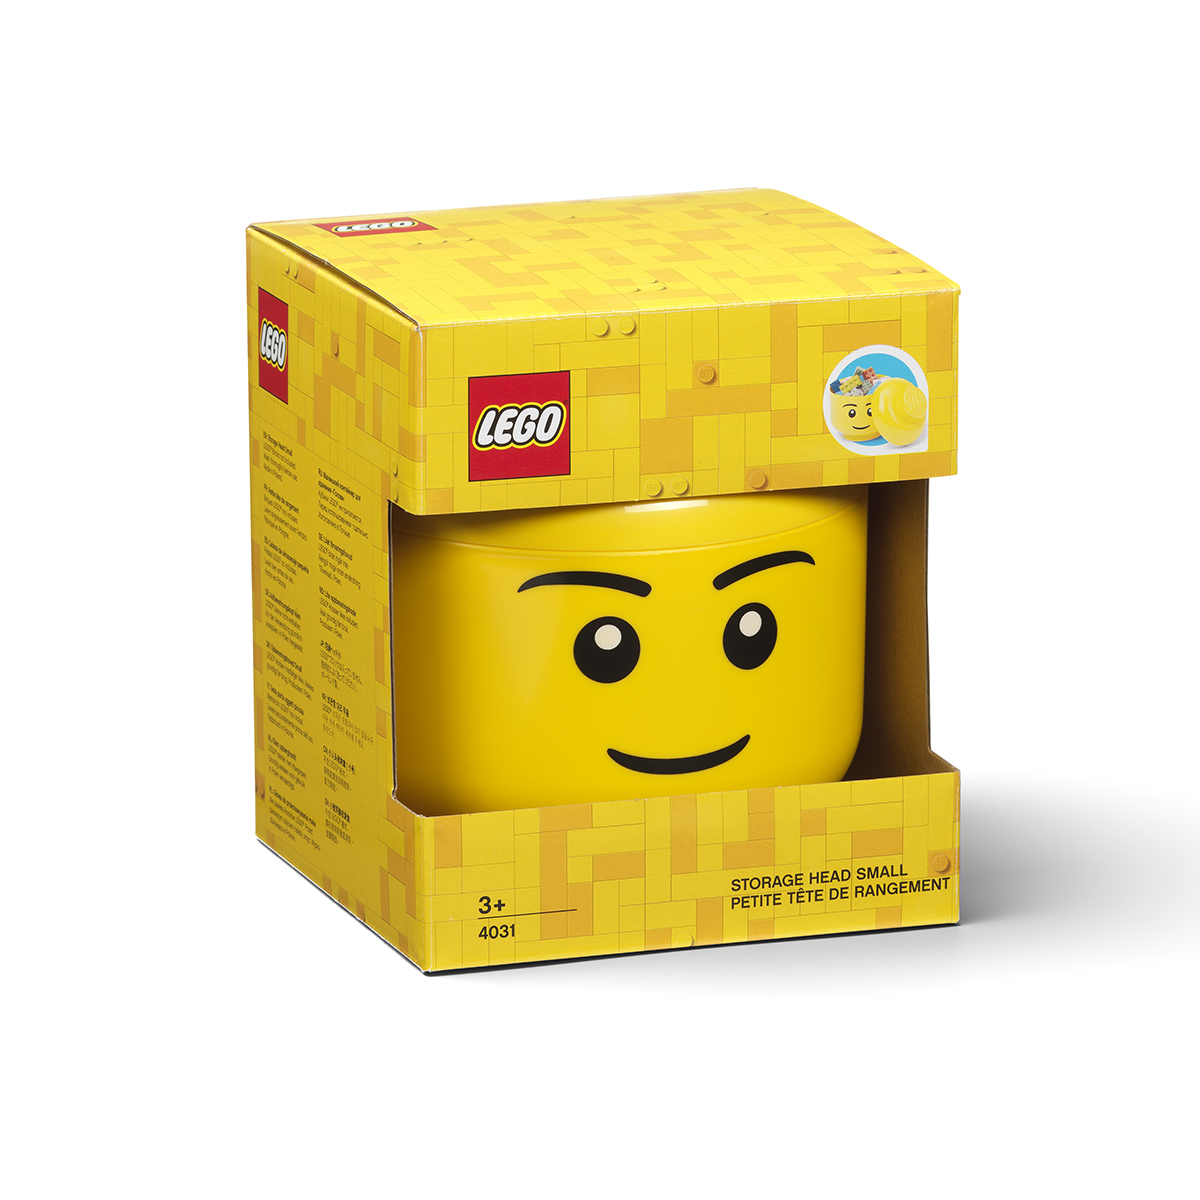  LEGO® Small Storage Head 